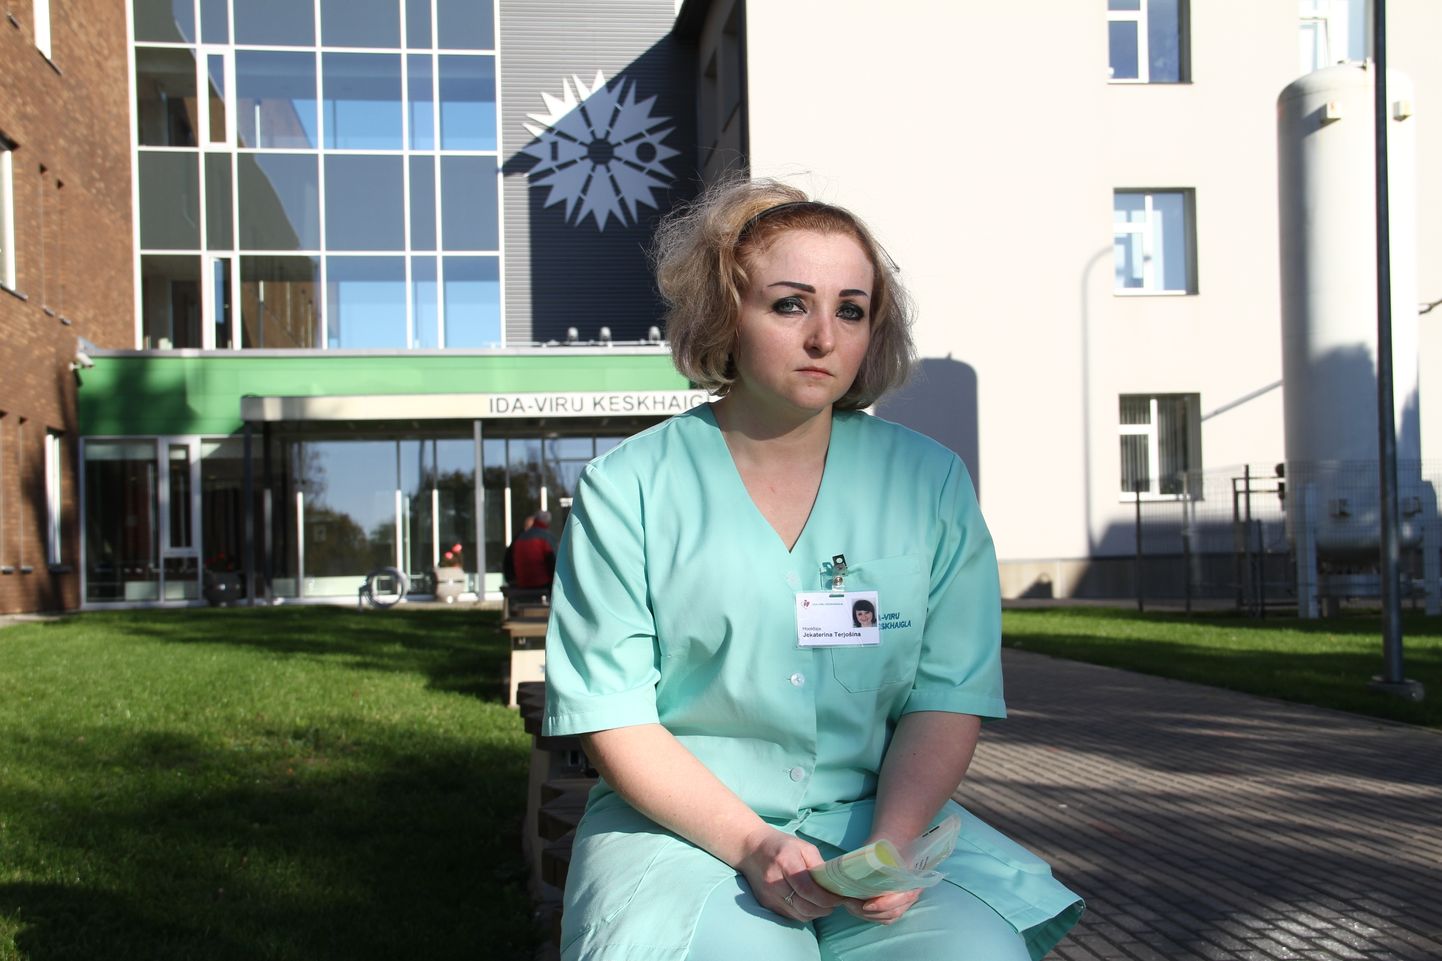 Фотография сделана на фоне Ида-Вируской центральной больницы, которая, однако, не имеет отношения к этой истории. На снимке - вдова Екатерина.